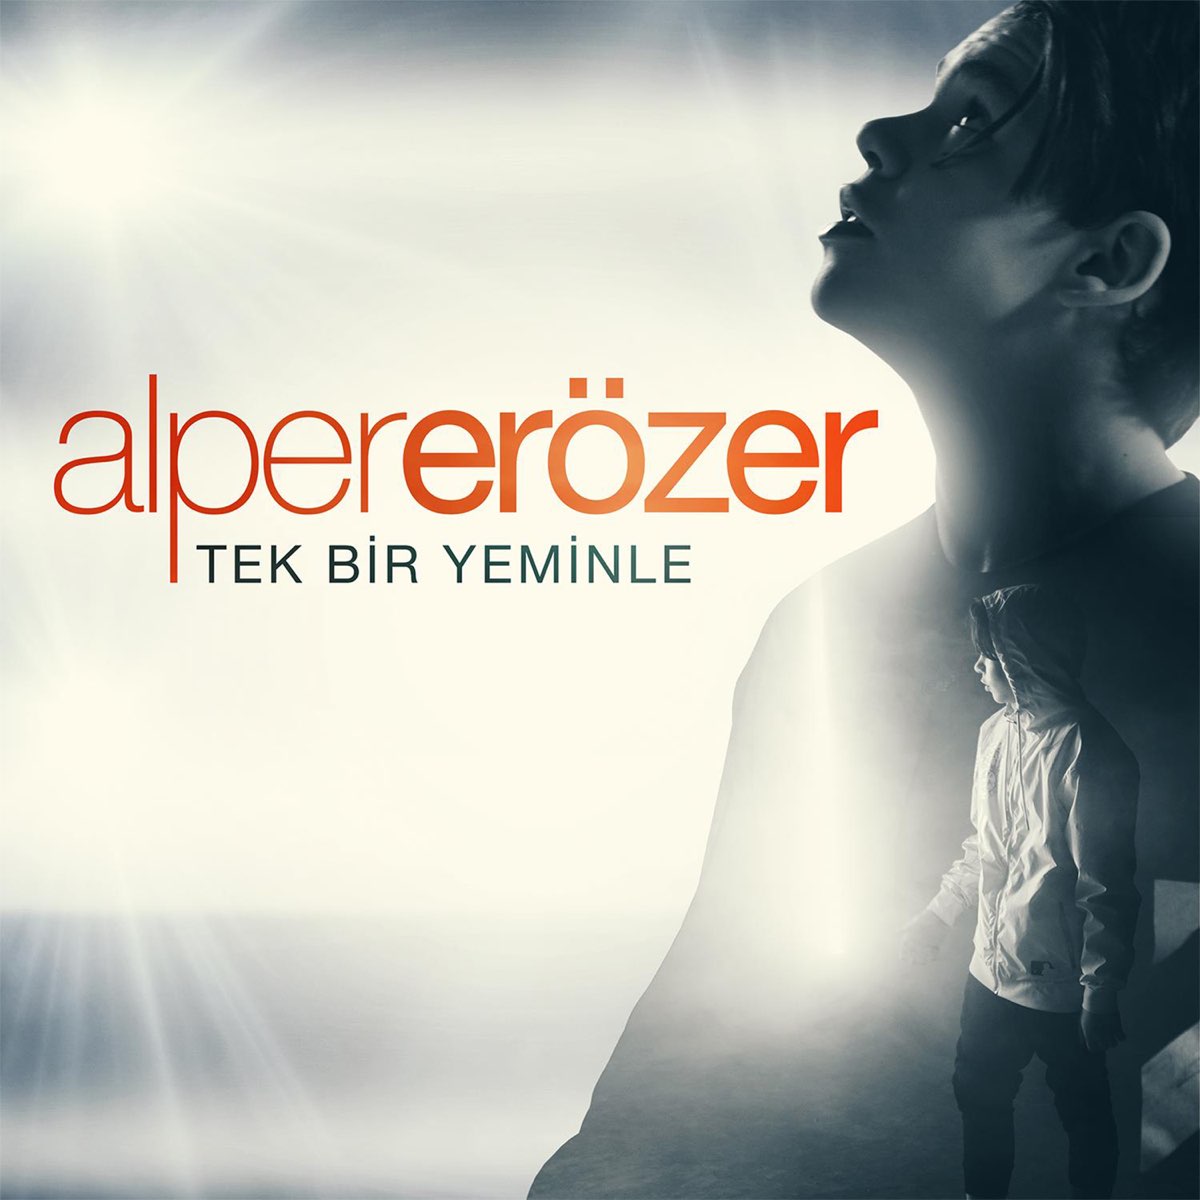 Tek Bir Yeminle - Single - Album by Alper Erozer - Apple Music